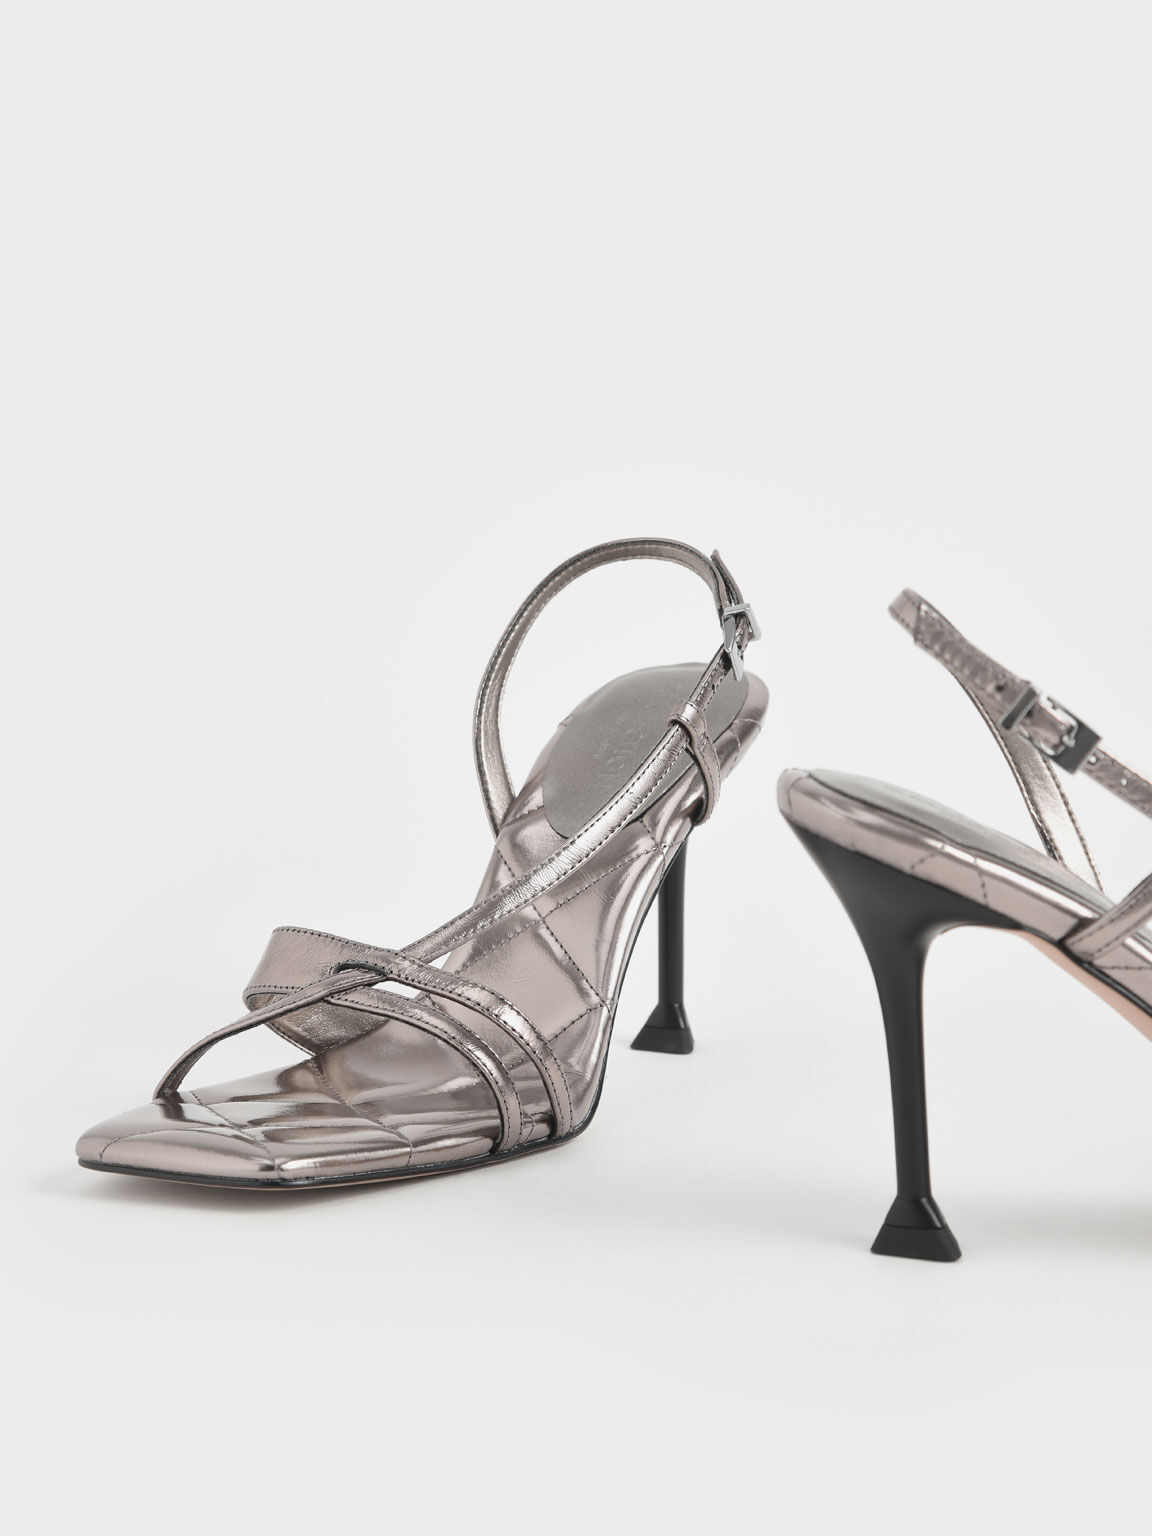 Wrinkled Leather Sculptural Heel Sandals, Silver, hi-res